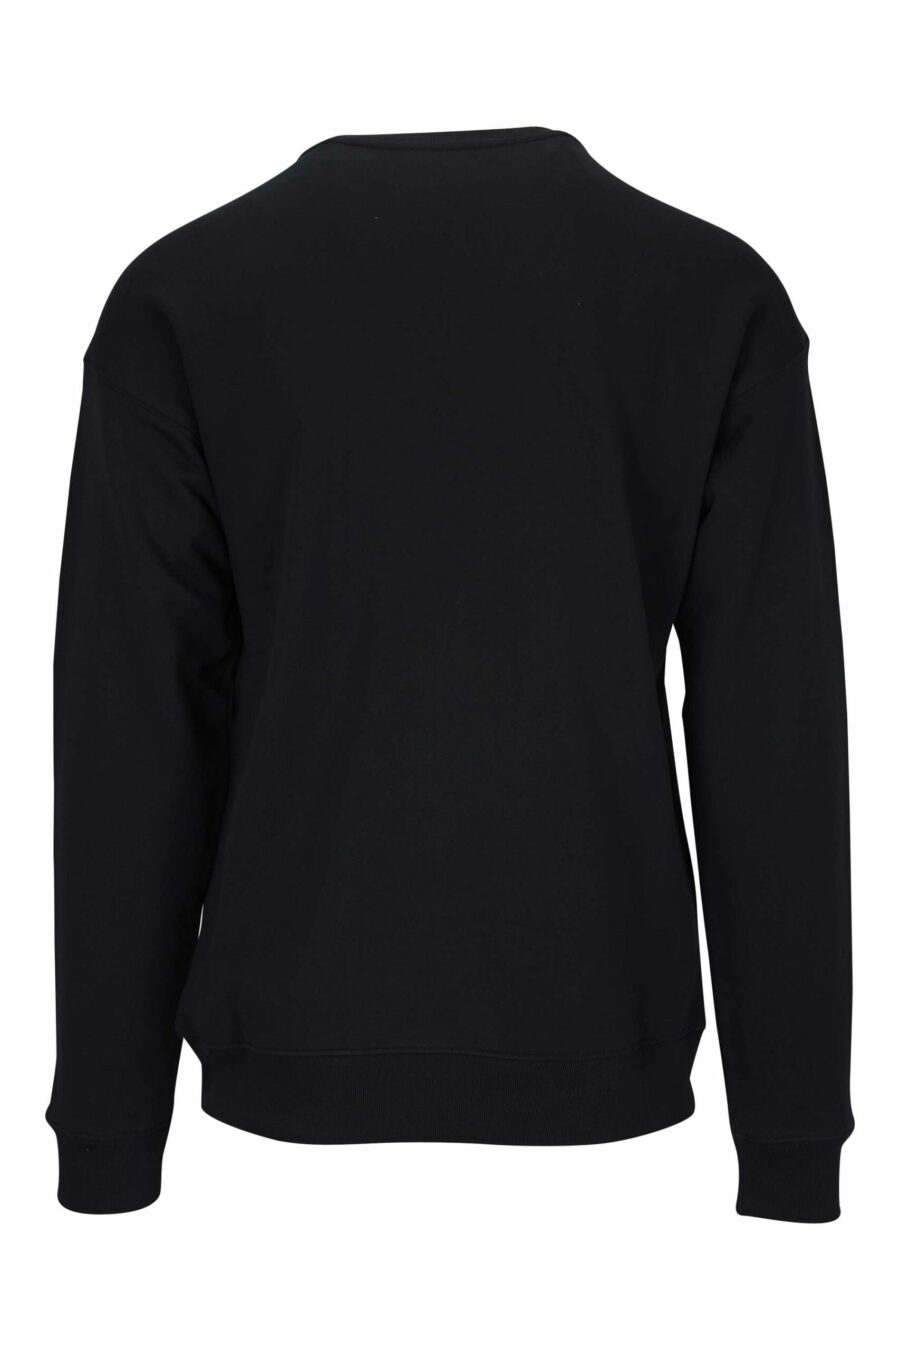 Sweat-shirt noir en coton bio avec maxilogue blanc classique - 667113403090 1 scaled